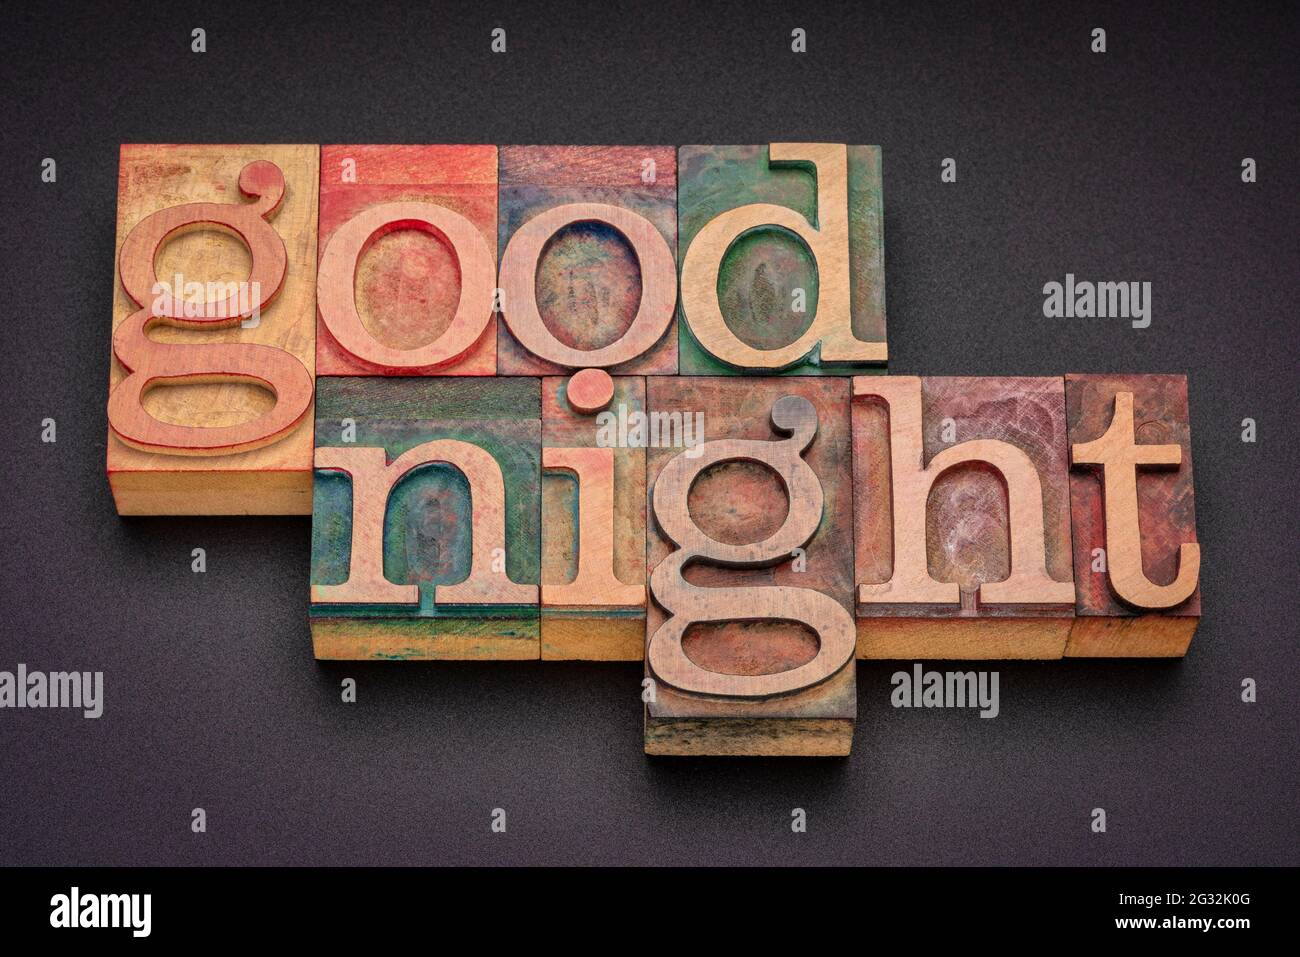 parola goodnight abstract in legno di letterpress vintage, esprimendo buoni desideri sulla separazione di notte o prima di andare a letto. Foto Stock